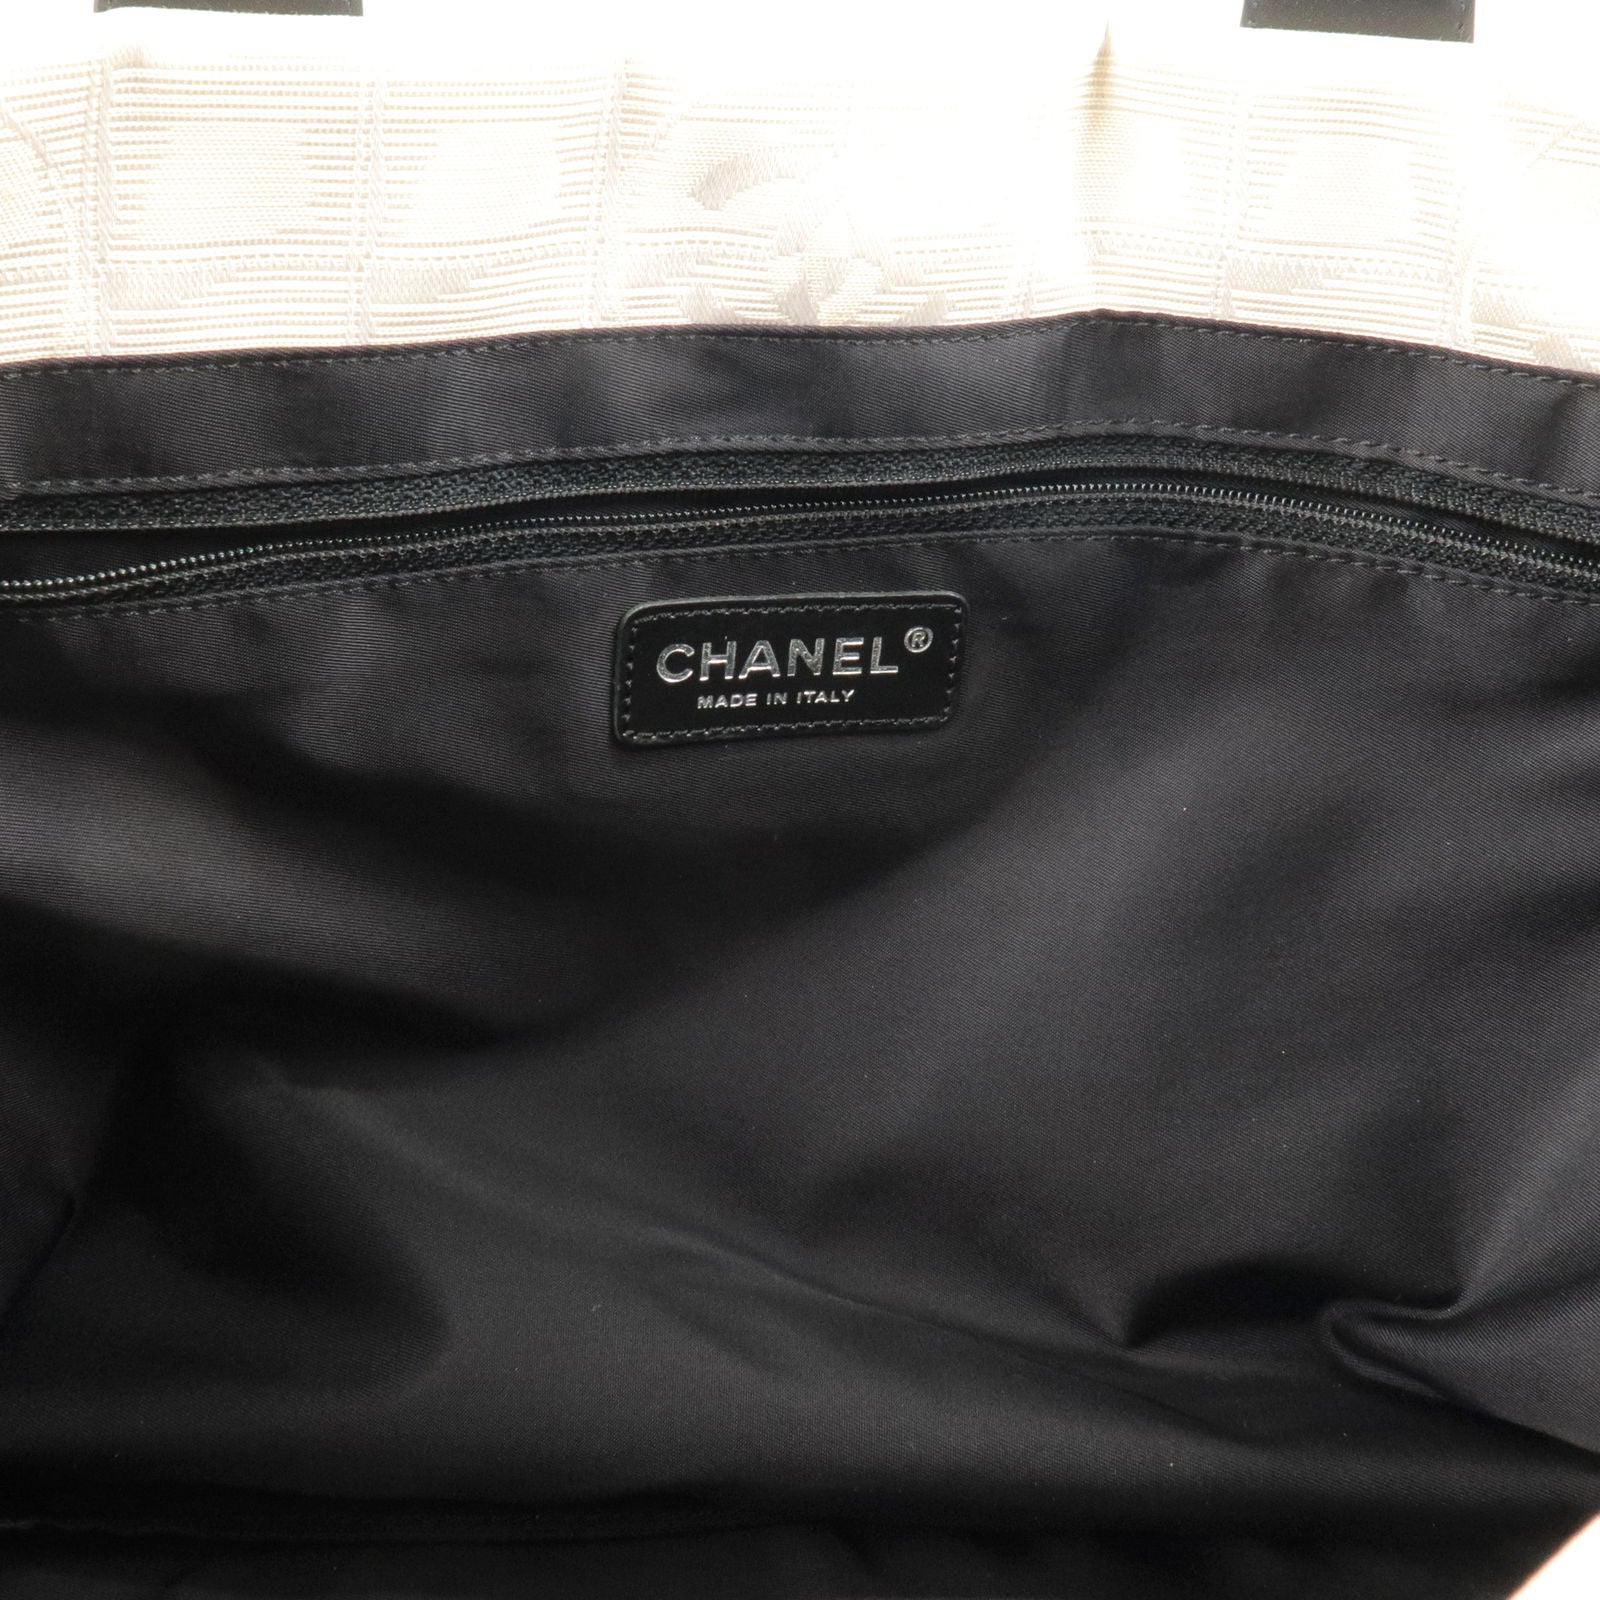 CHANEL New Travel Handbag Tote Bag With Pouch Nylon Jacquard Beige 0508  NGA35